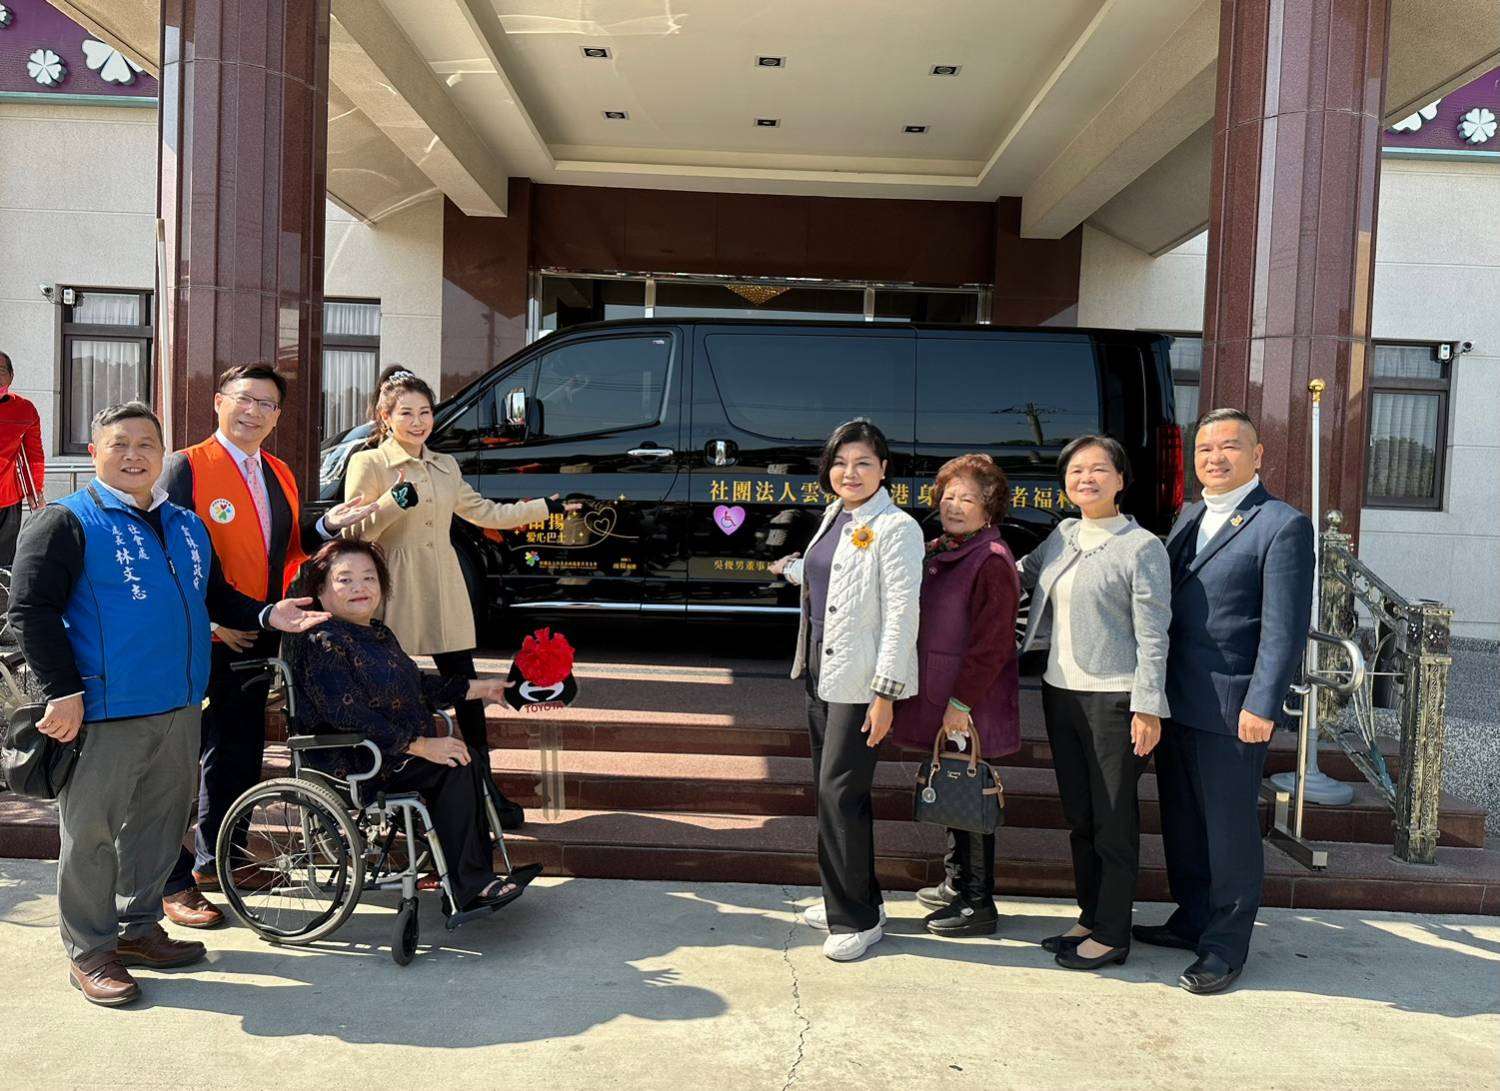 陳雨揚女士及吳俊男董事長捐贈身心障礙者服務專車予身障團體